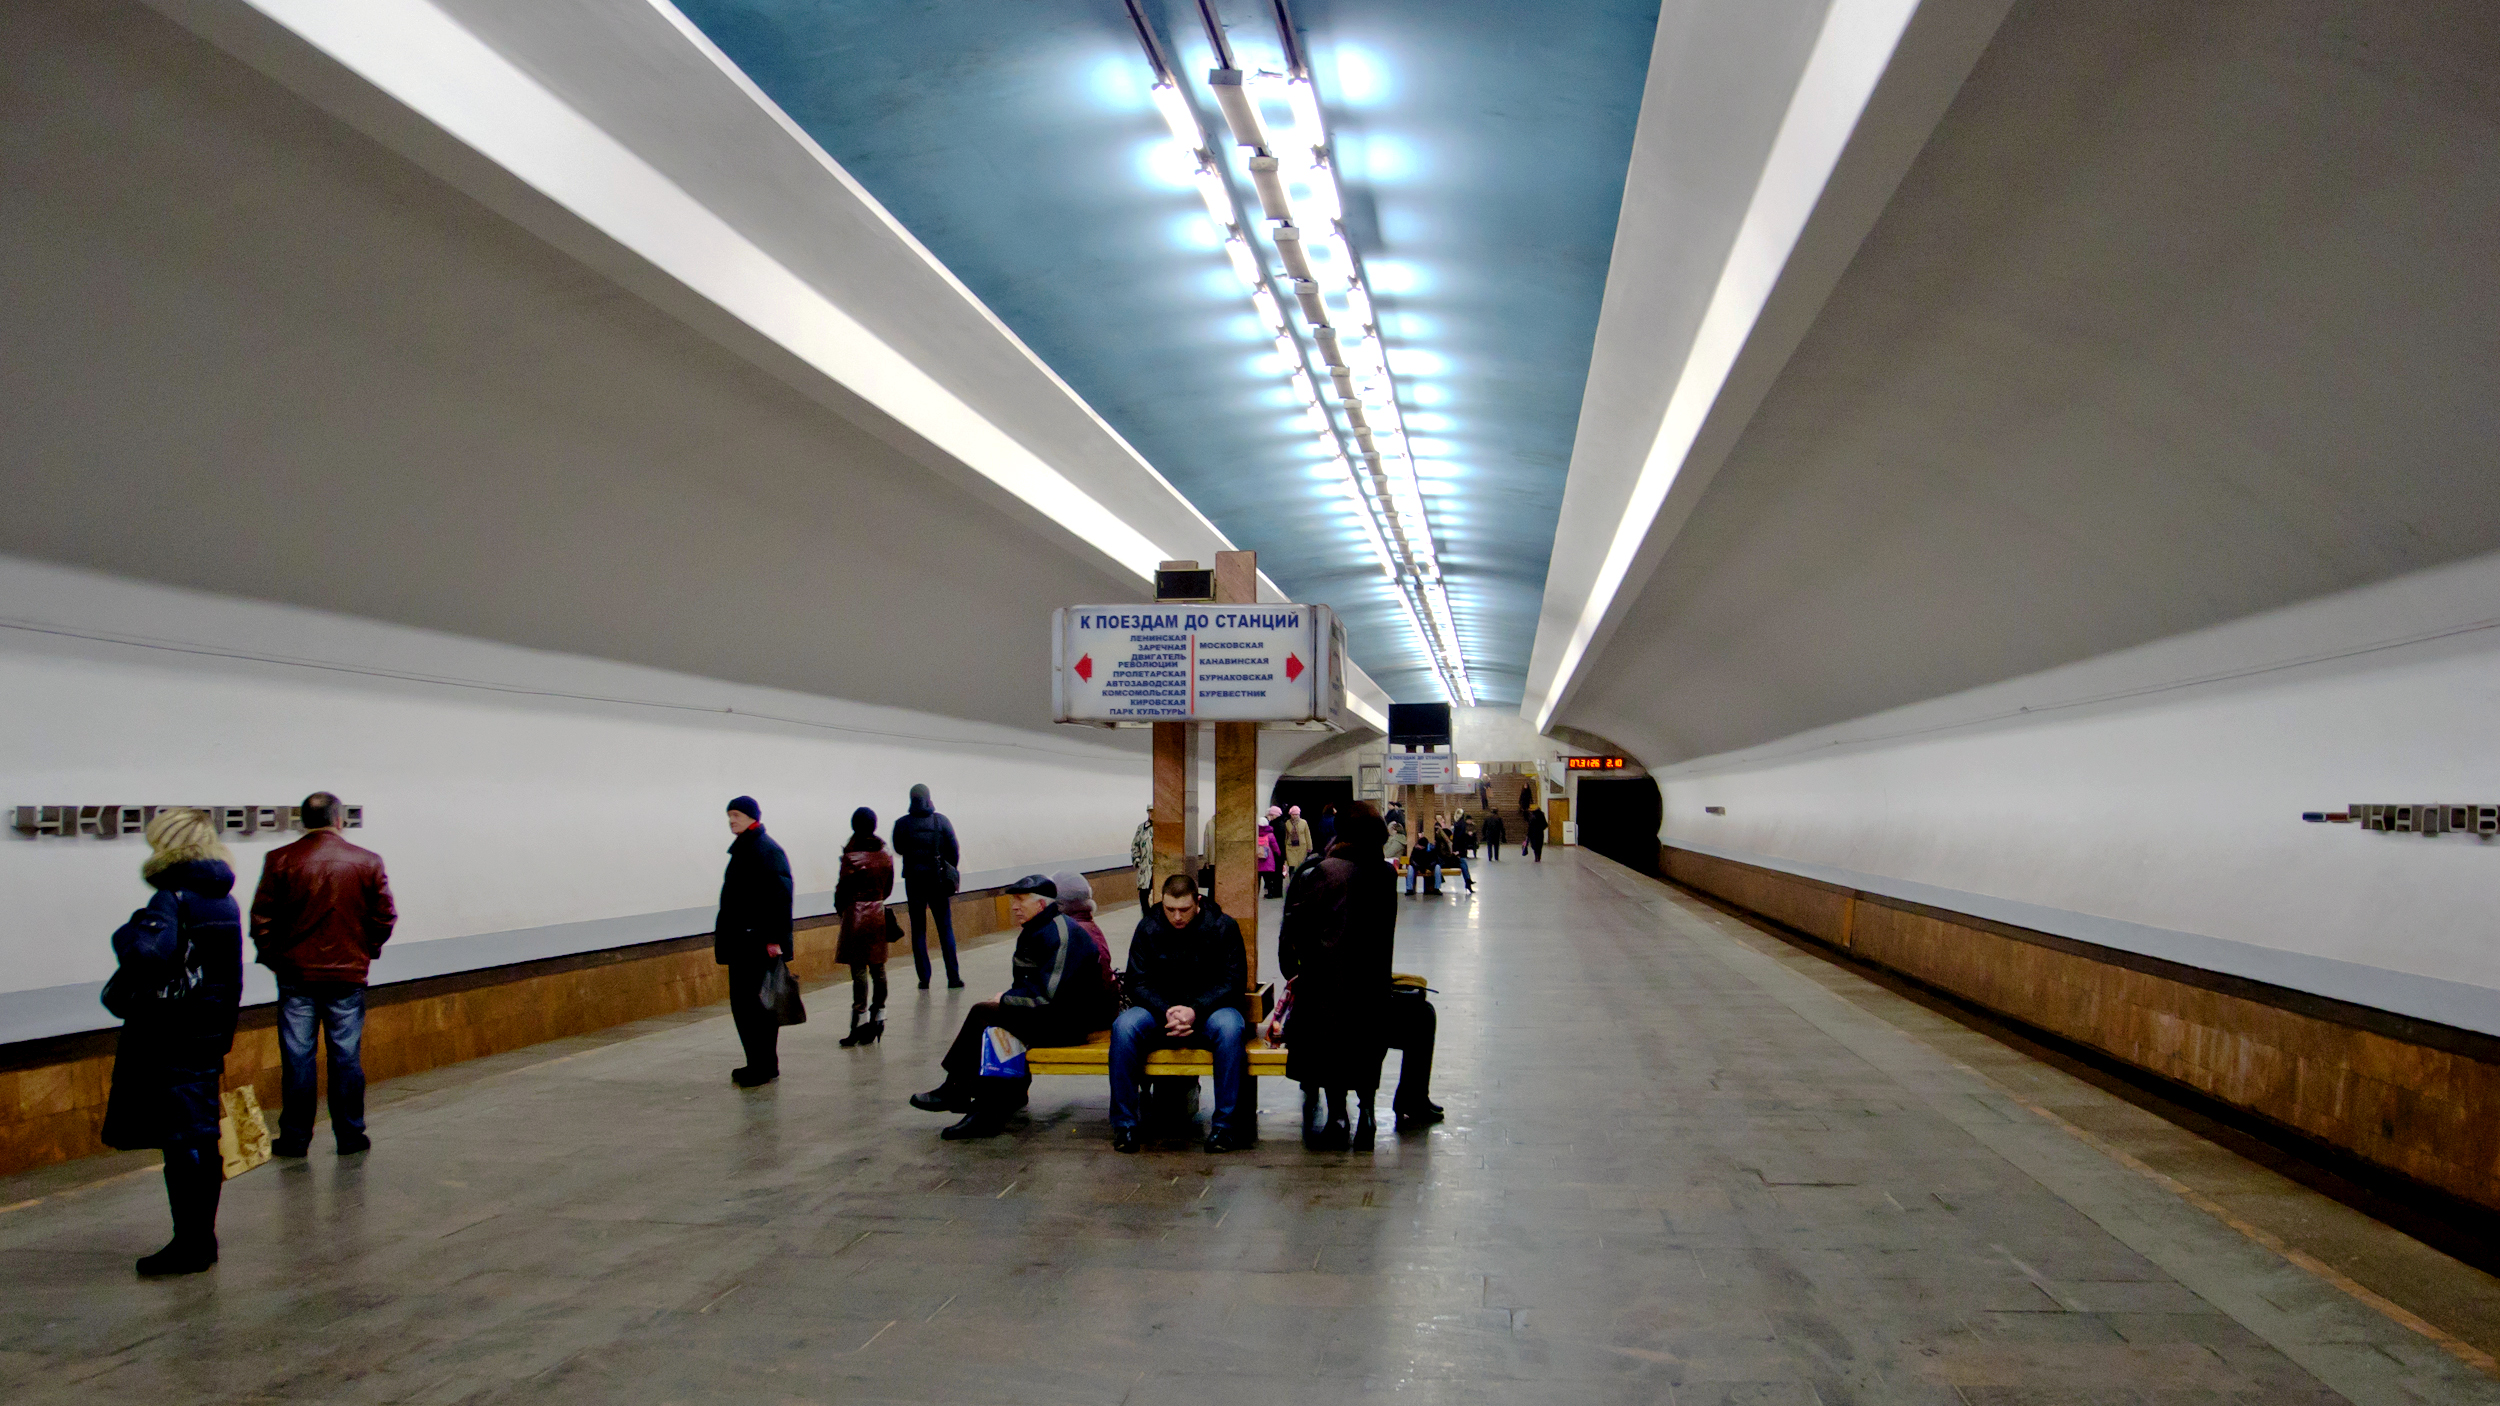 метро московское нижний новгород